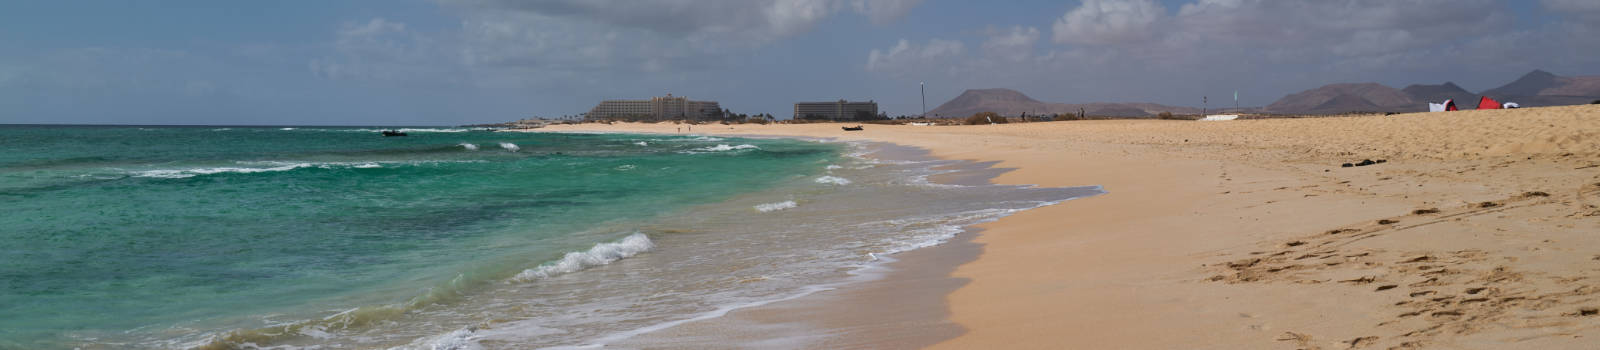 Die Strände Fuerteventuras: Playa del Pozo – Playa del Medano.